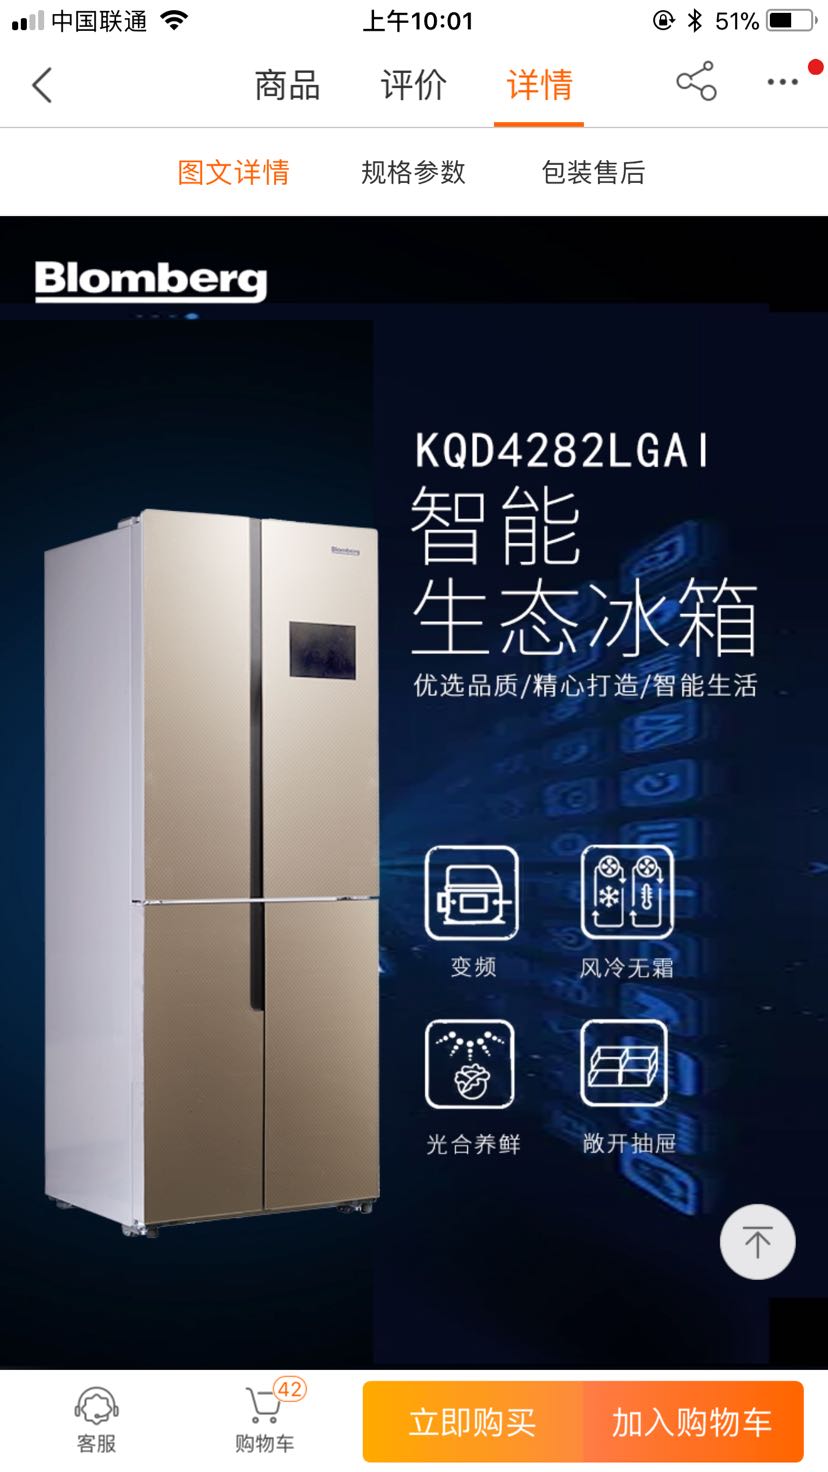 变频冰箱是评价  苏宁自营品牌一博伦博格冰箱,428升电脑风冷智能云